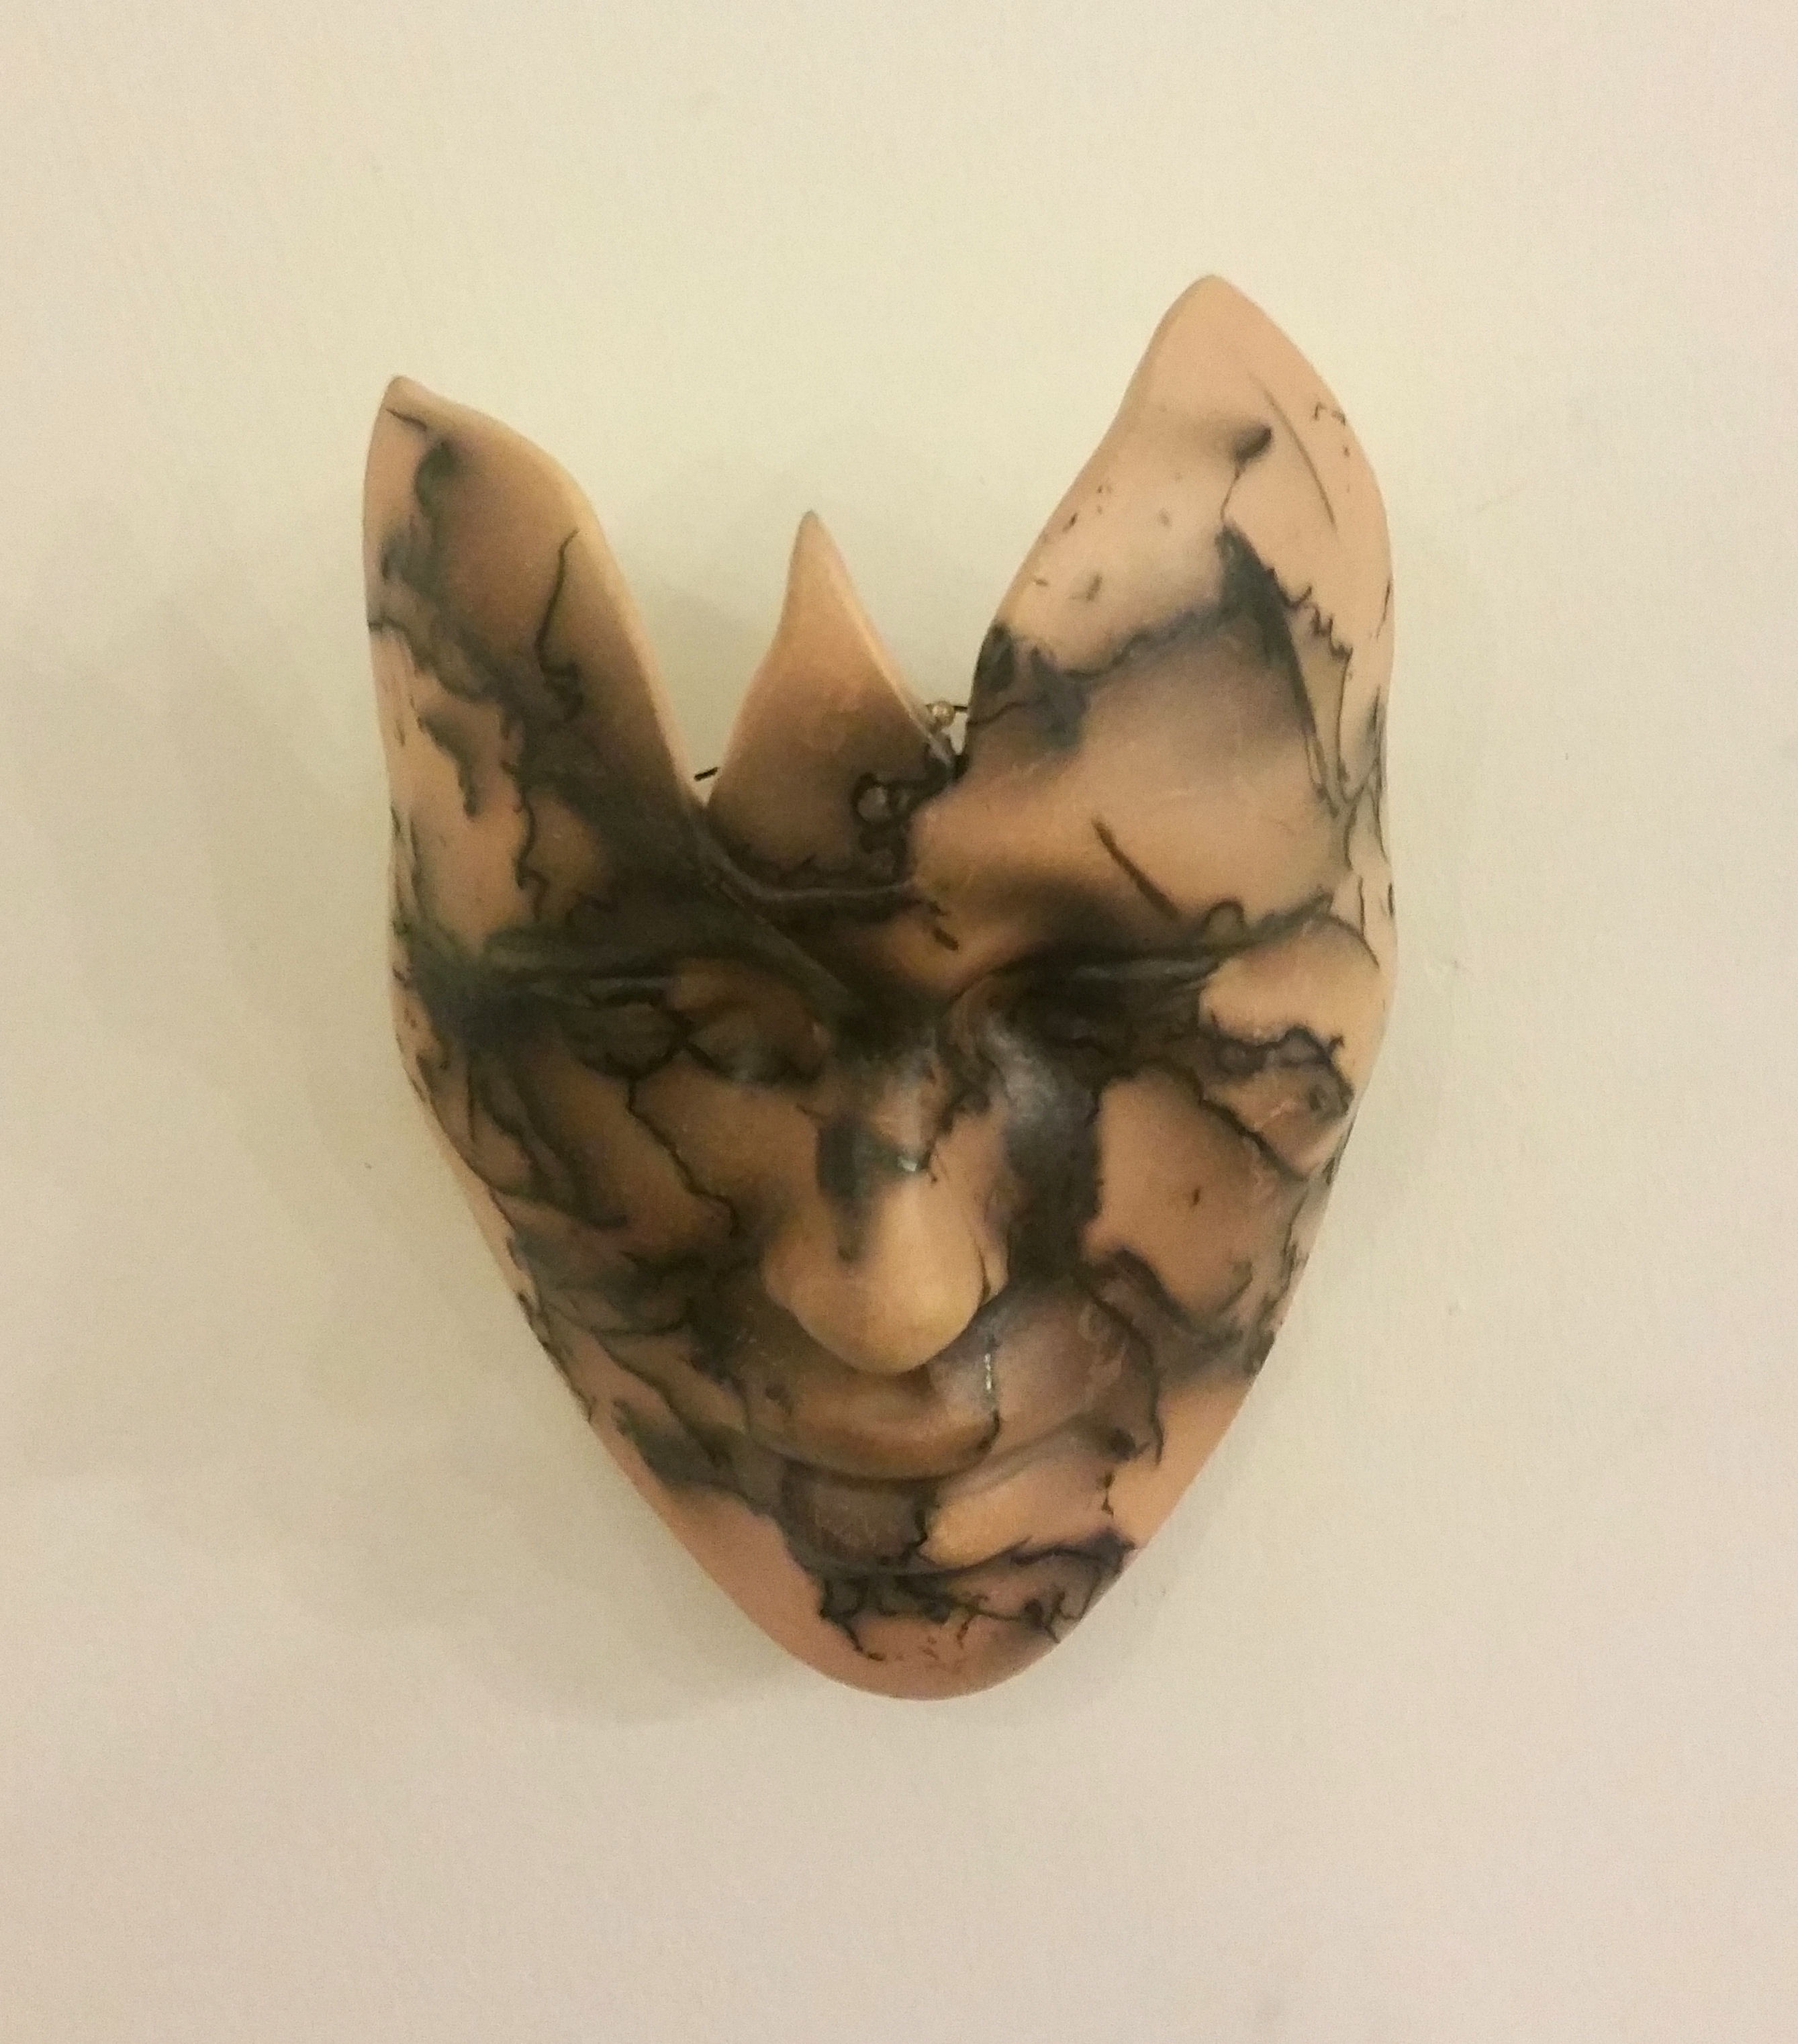 'Mask V' by artist Julian Smith